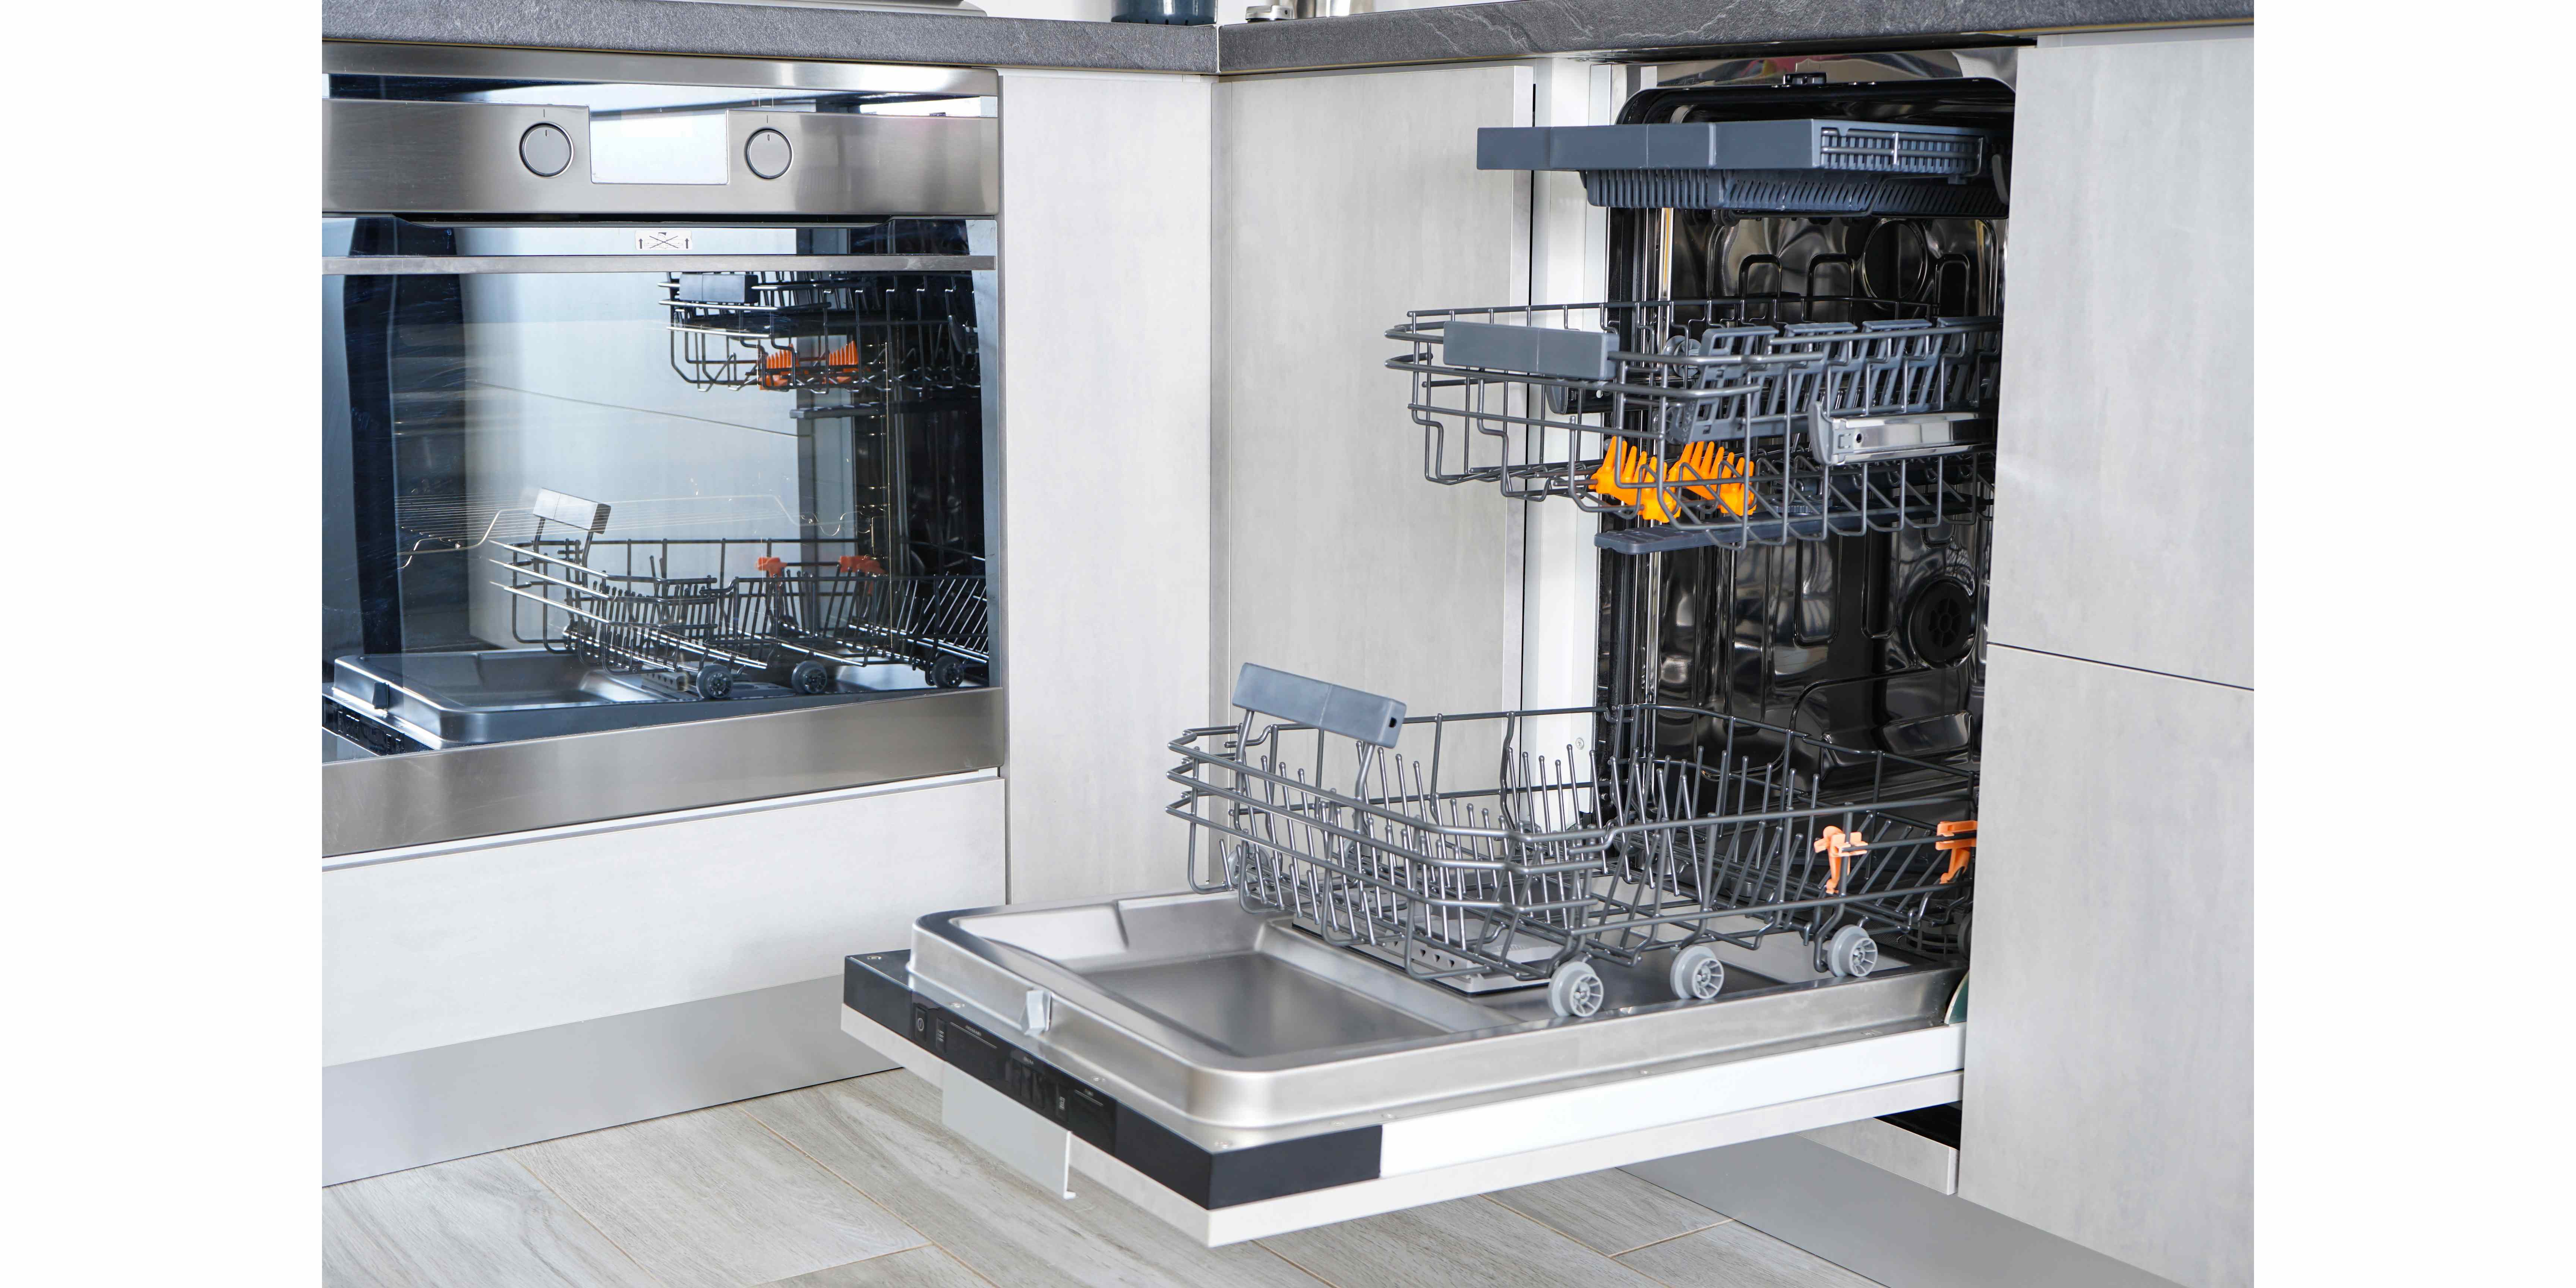 open empty dishwasher washing dishes in the dishwasher open automatic dishwasher